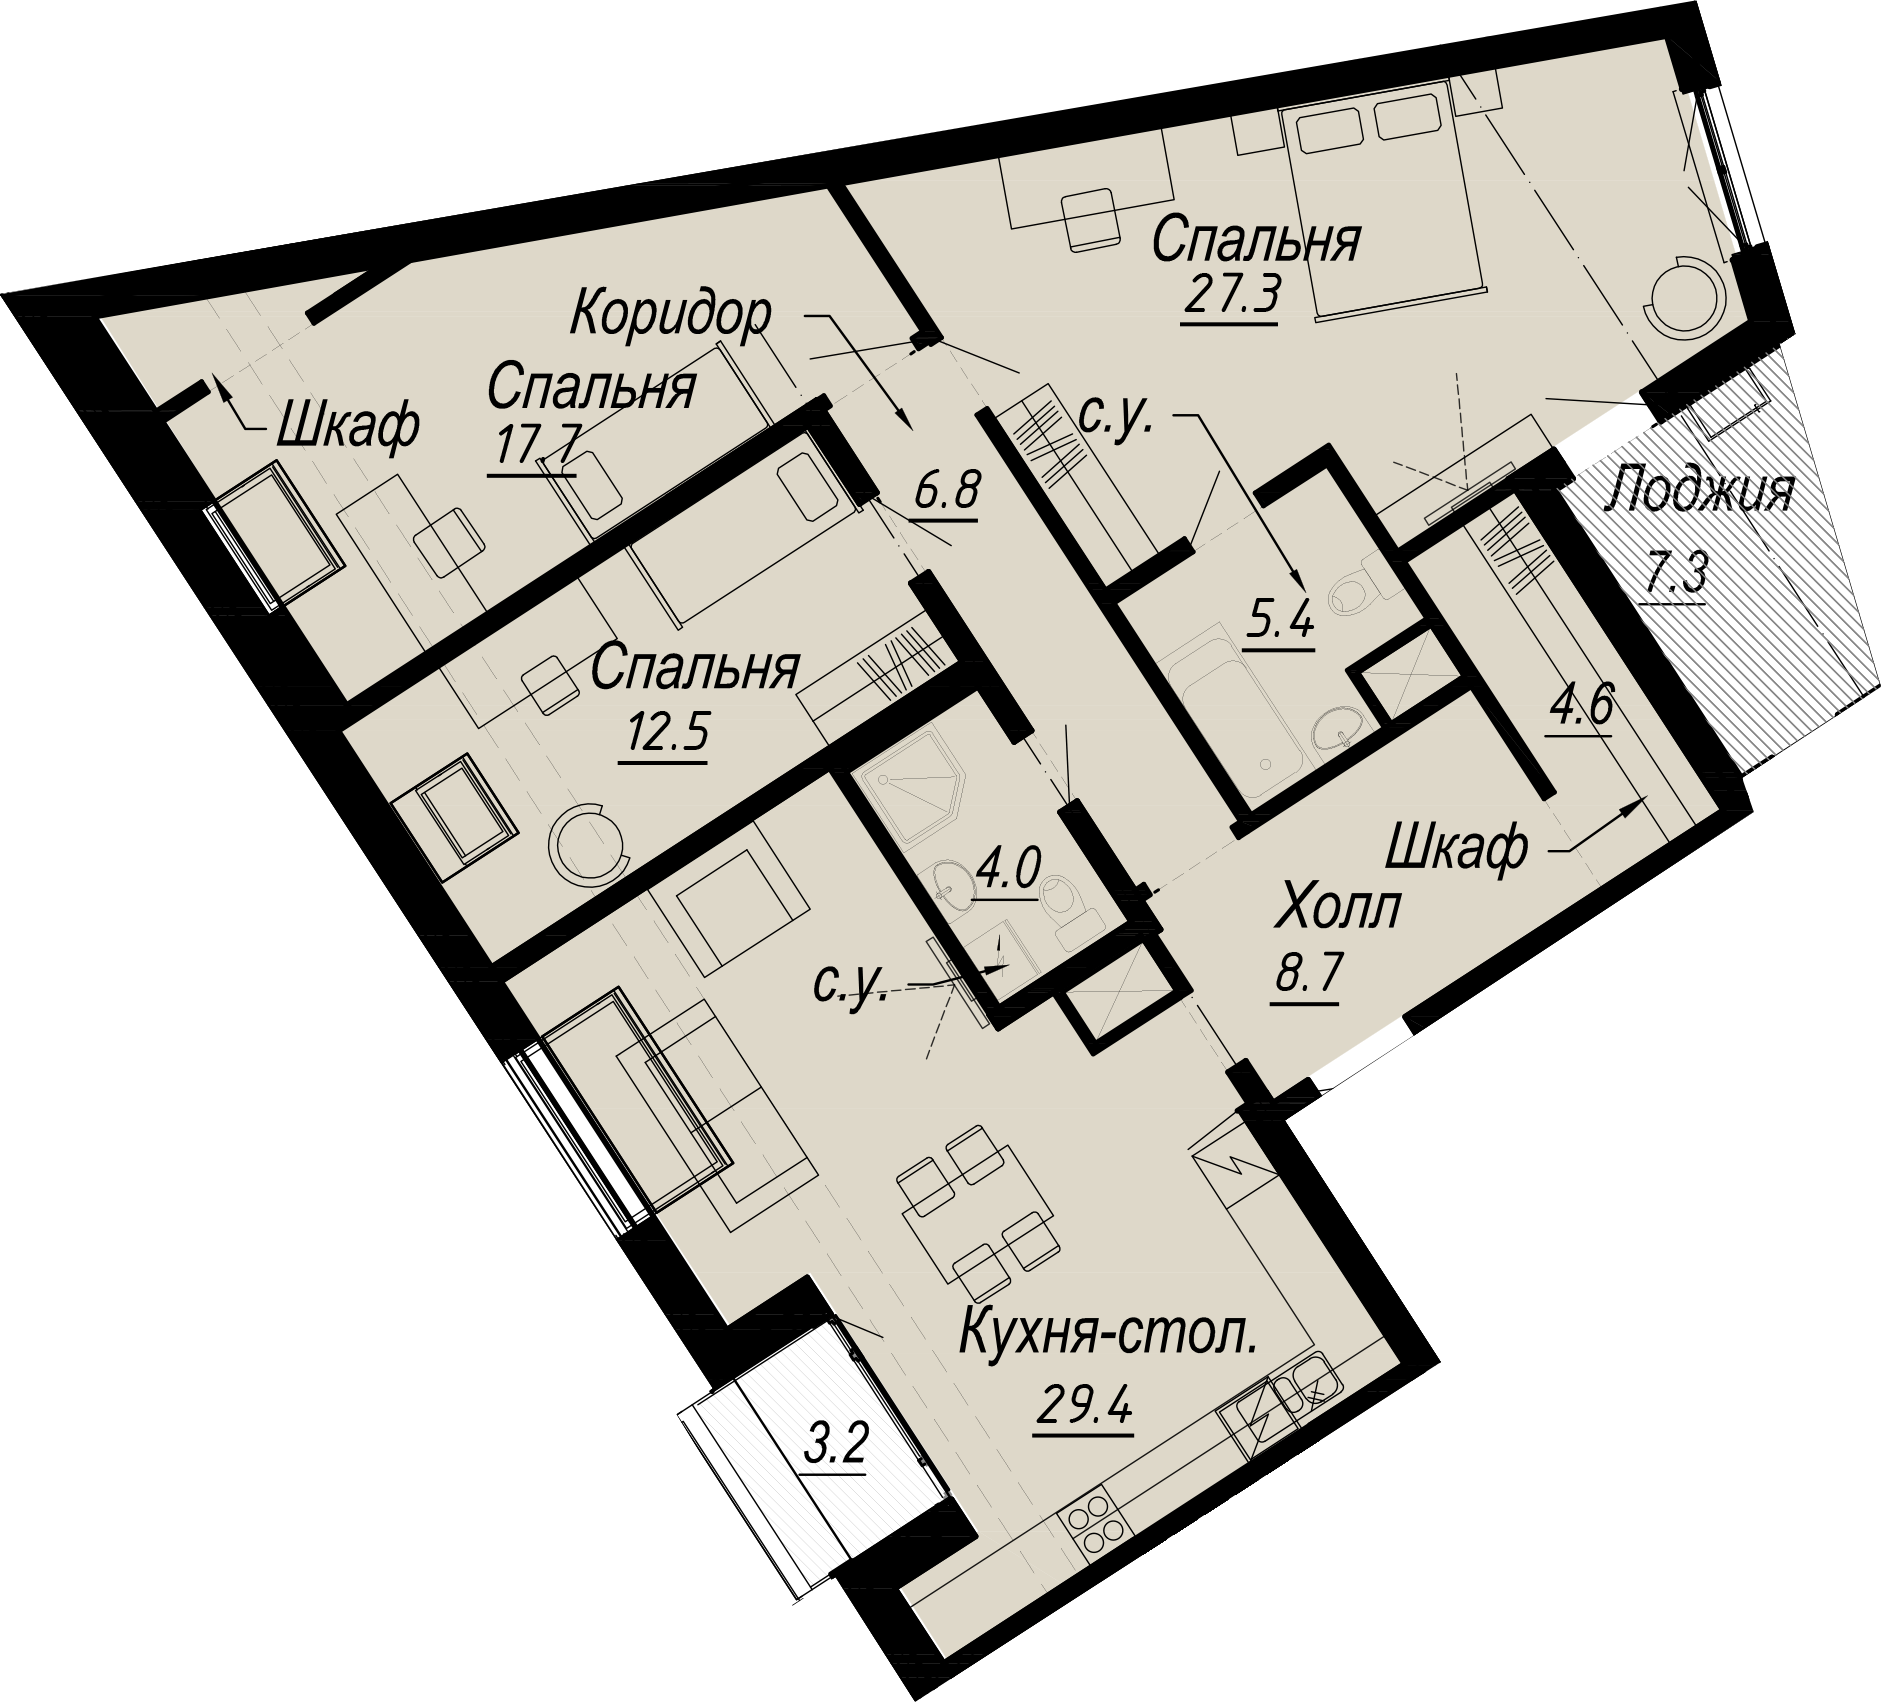 3-комнатная квартира  №1-8 в Meltzer Hall: 123.92 м², этаж 8 - купить в Санкт-Петербурге